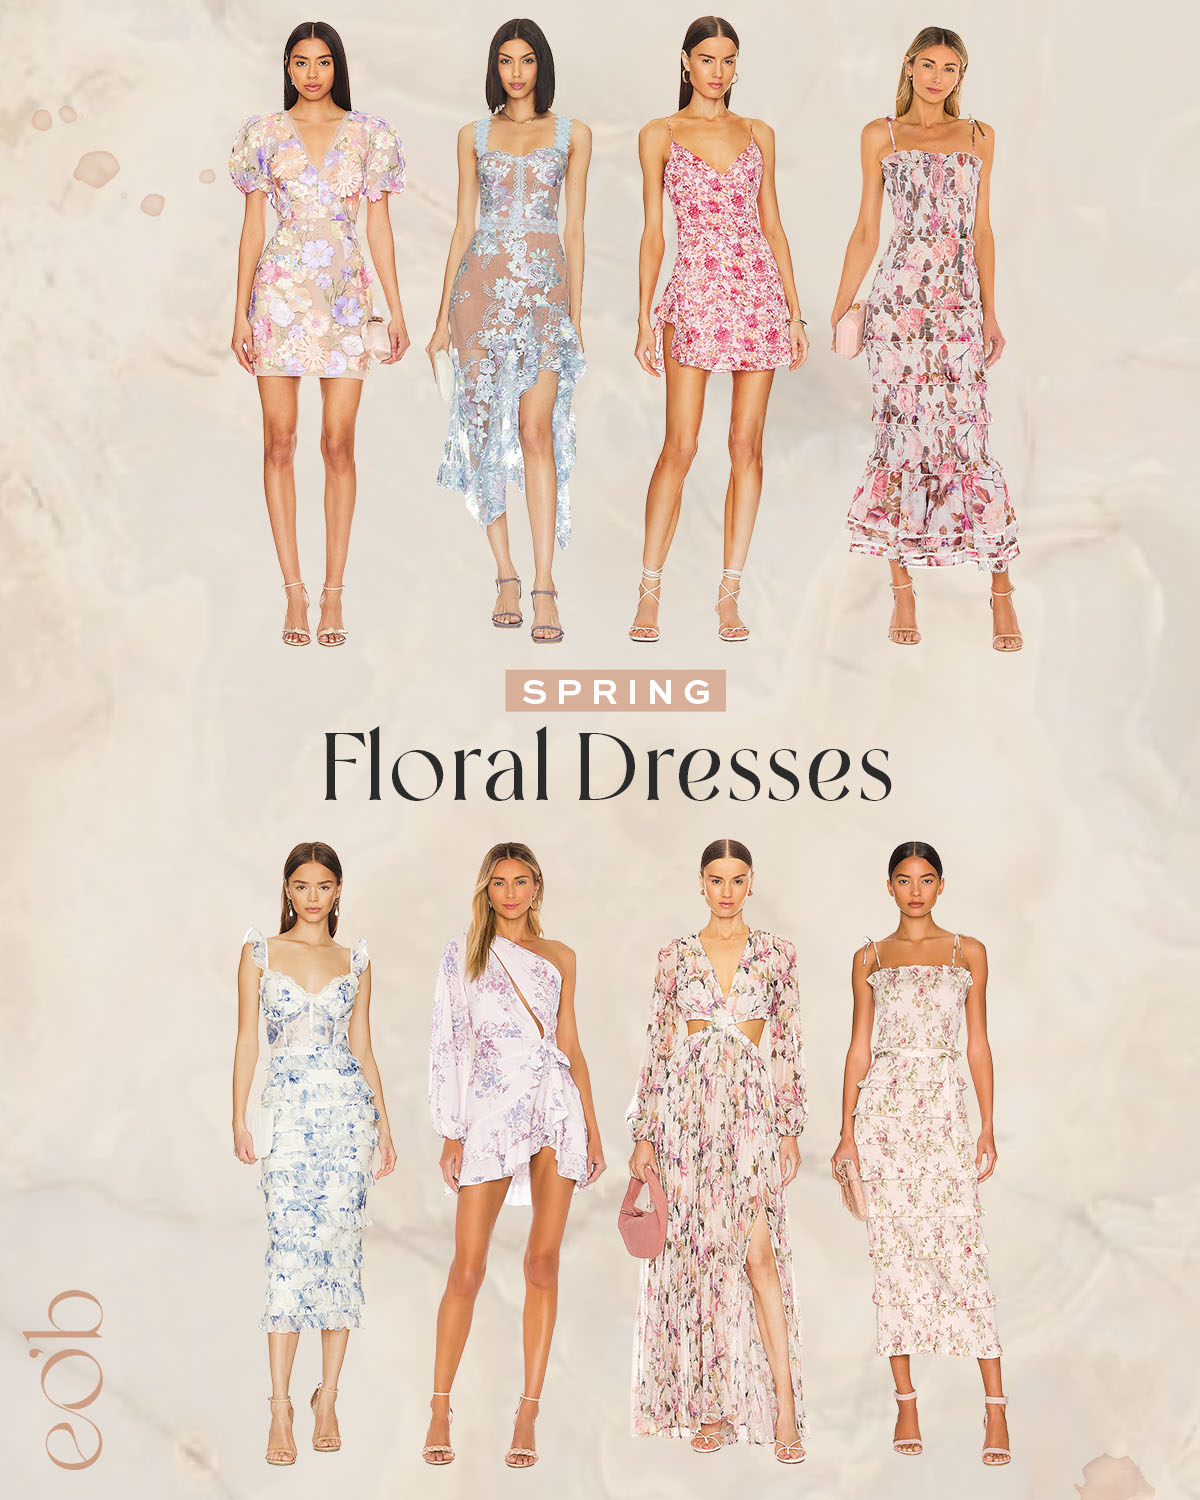 3.27.24-EOB-Spring Floral Dresses-Blog Cover